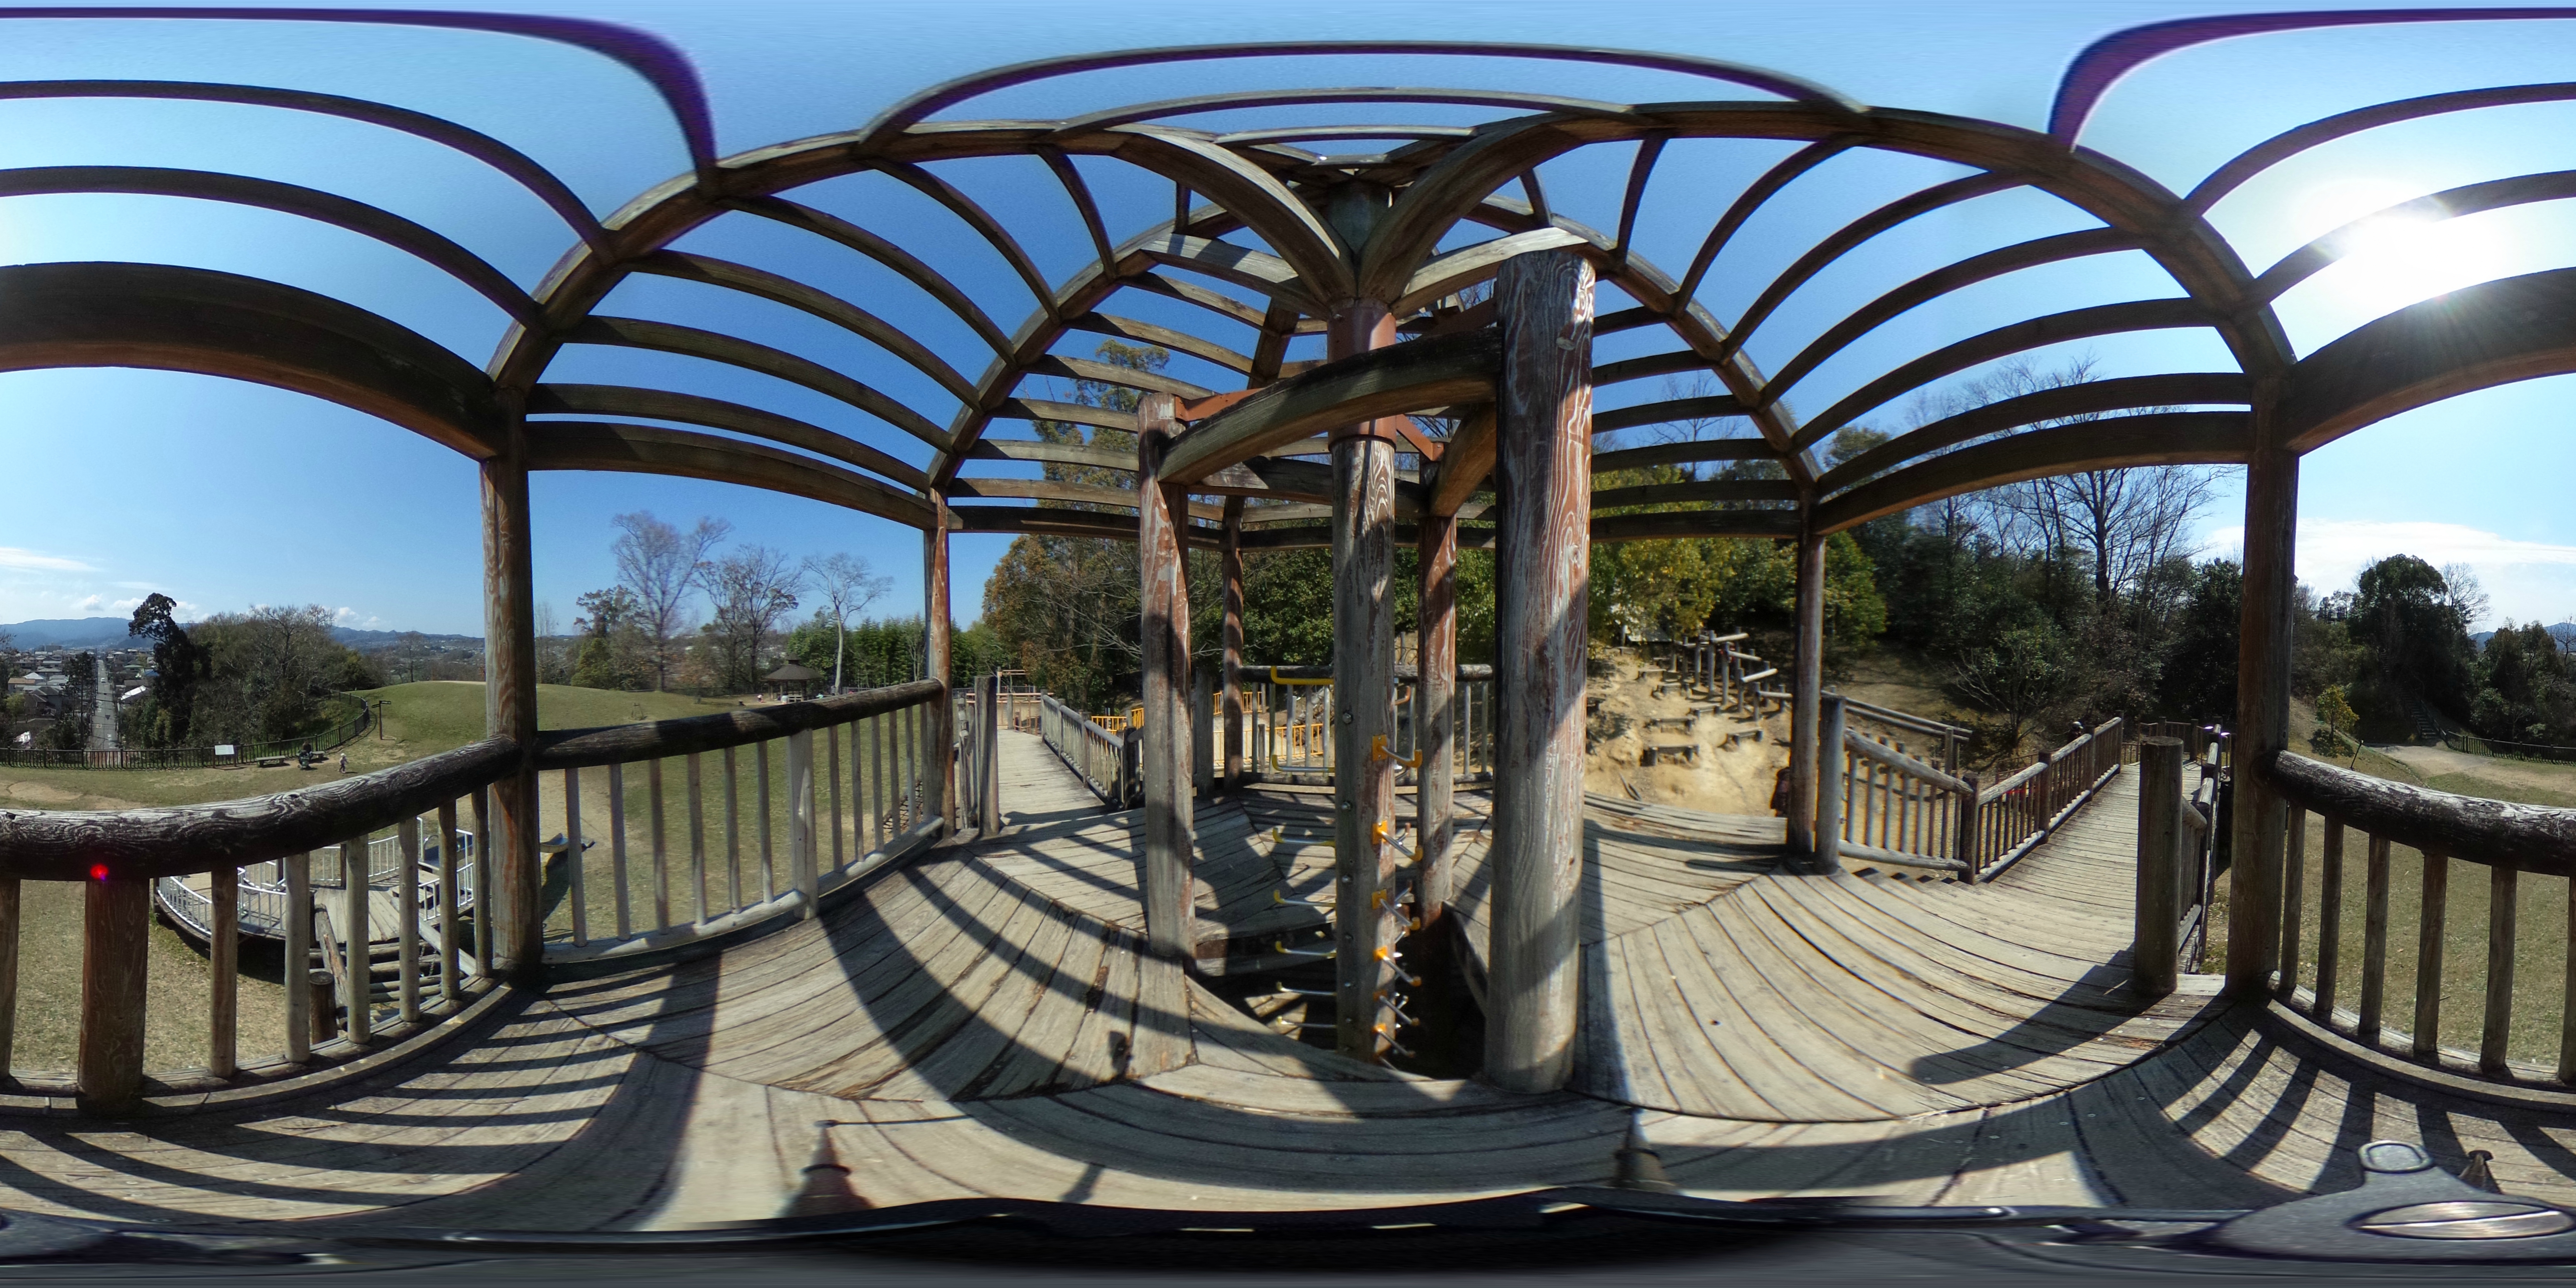 烏帽子形公園わんぱく広場のアスレチック遊具からの360度パノラマ画像